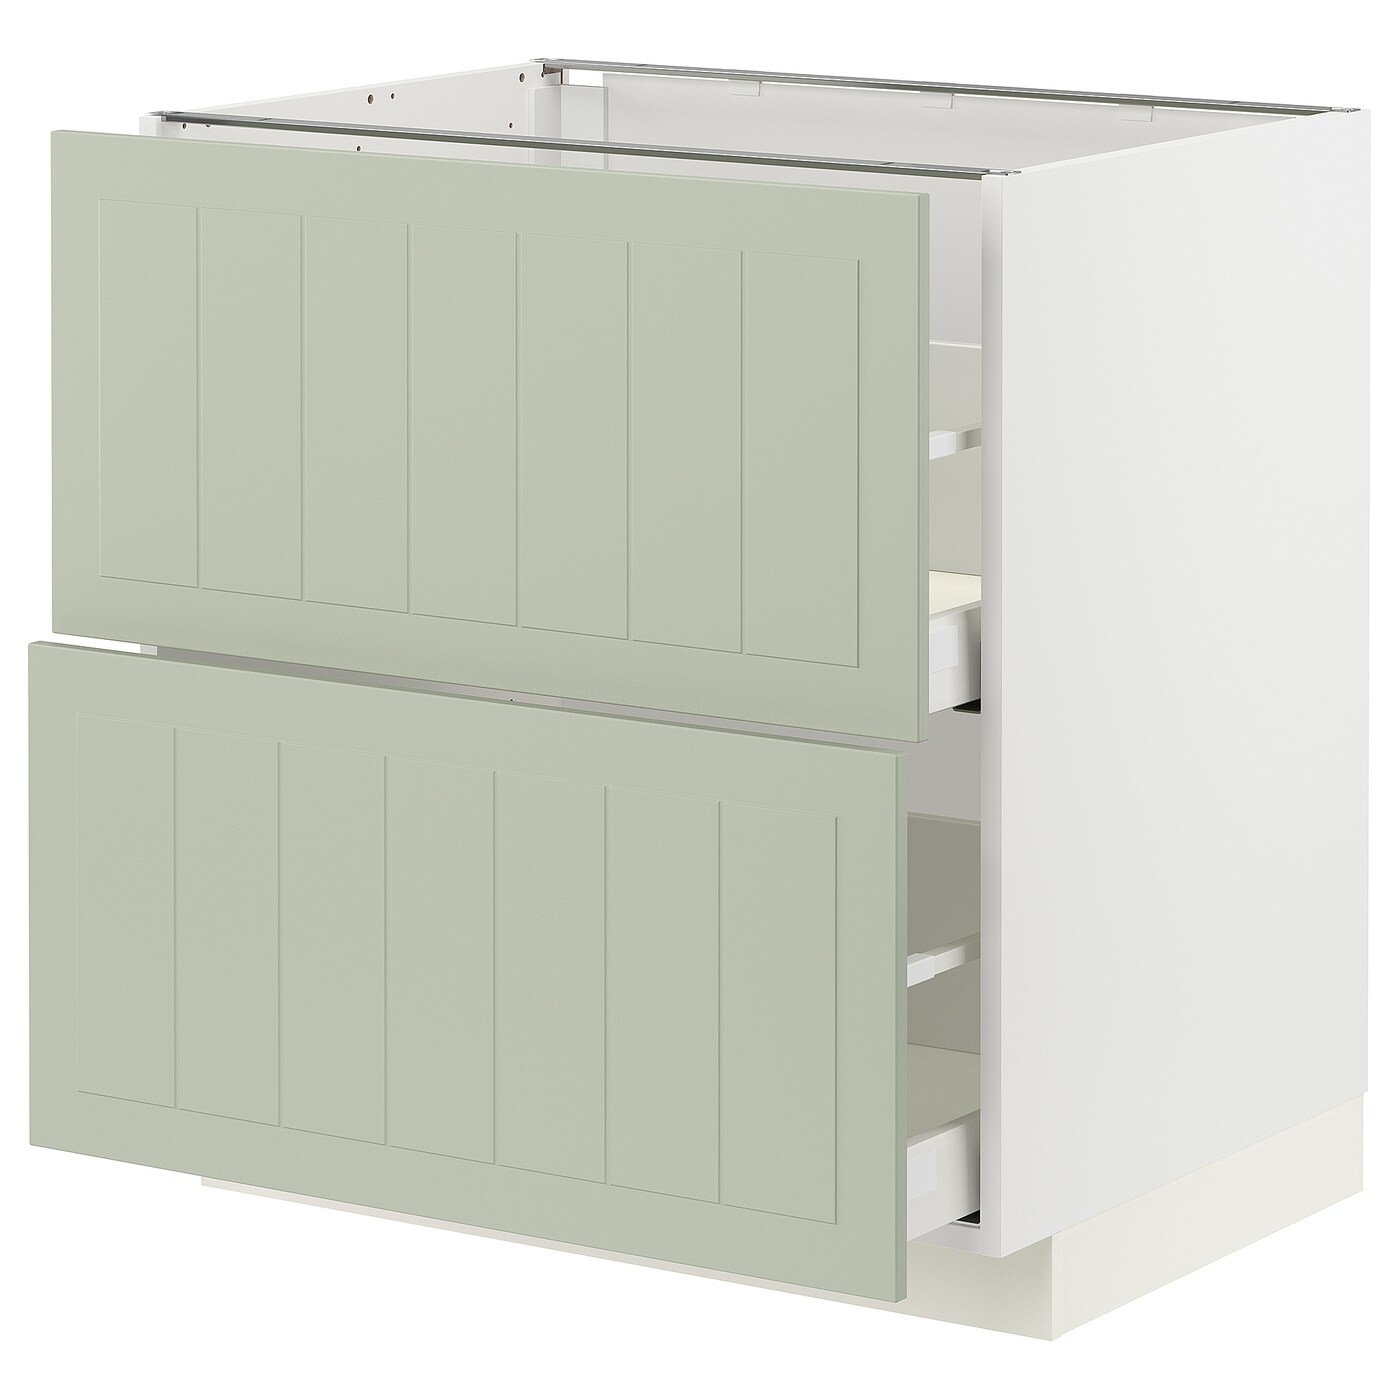 Напольный кухонный шкаф  - IKEA METOD MAXIMERA, 80x61,9x80см, белый/светло-зеленый, МЕТОД МАКСИМЕРА ИКЕА